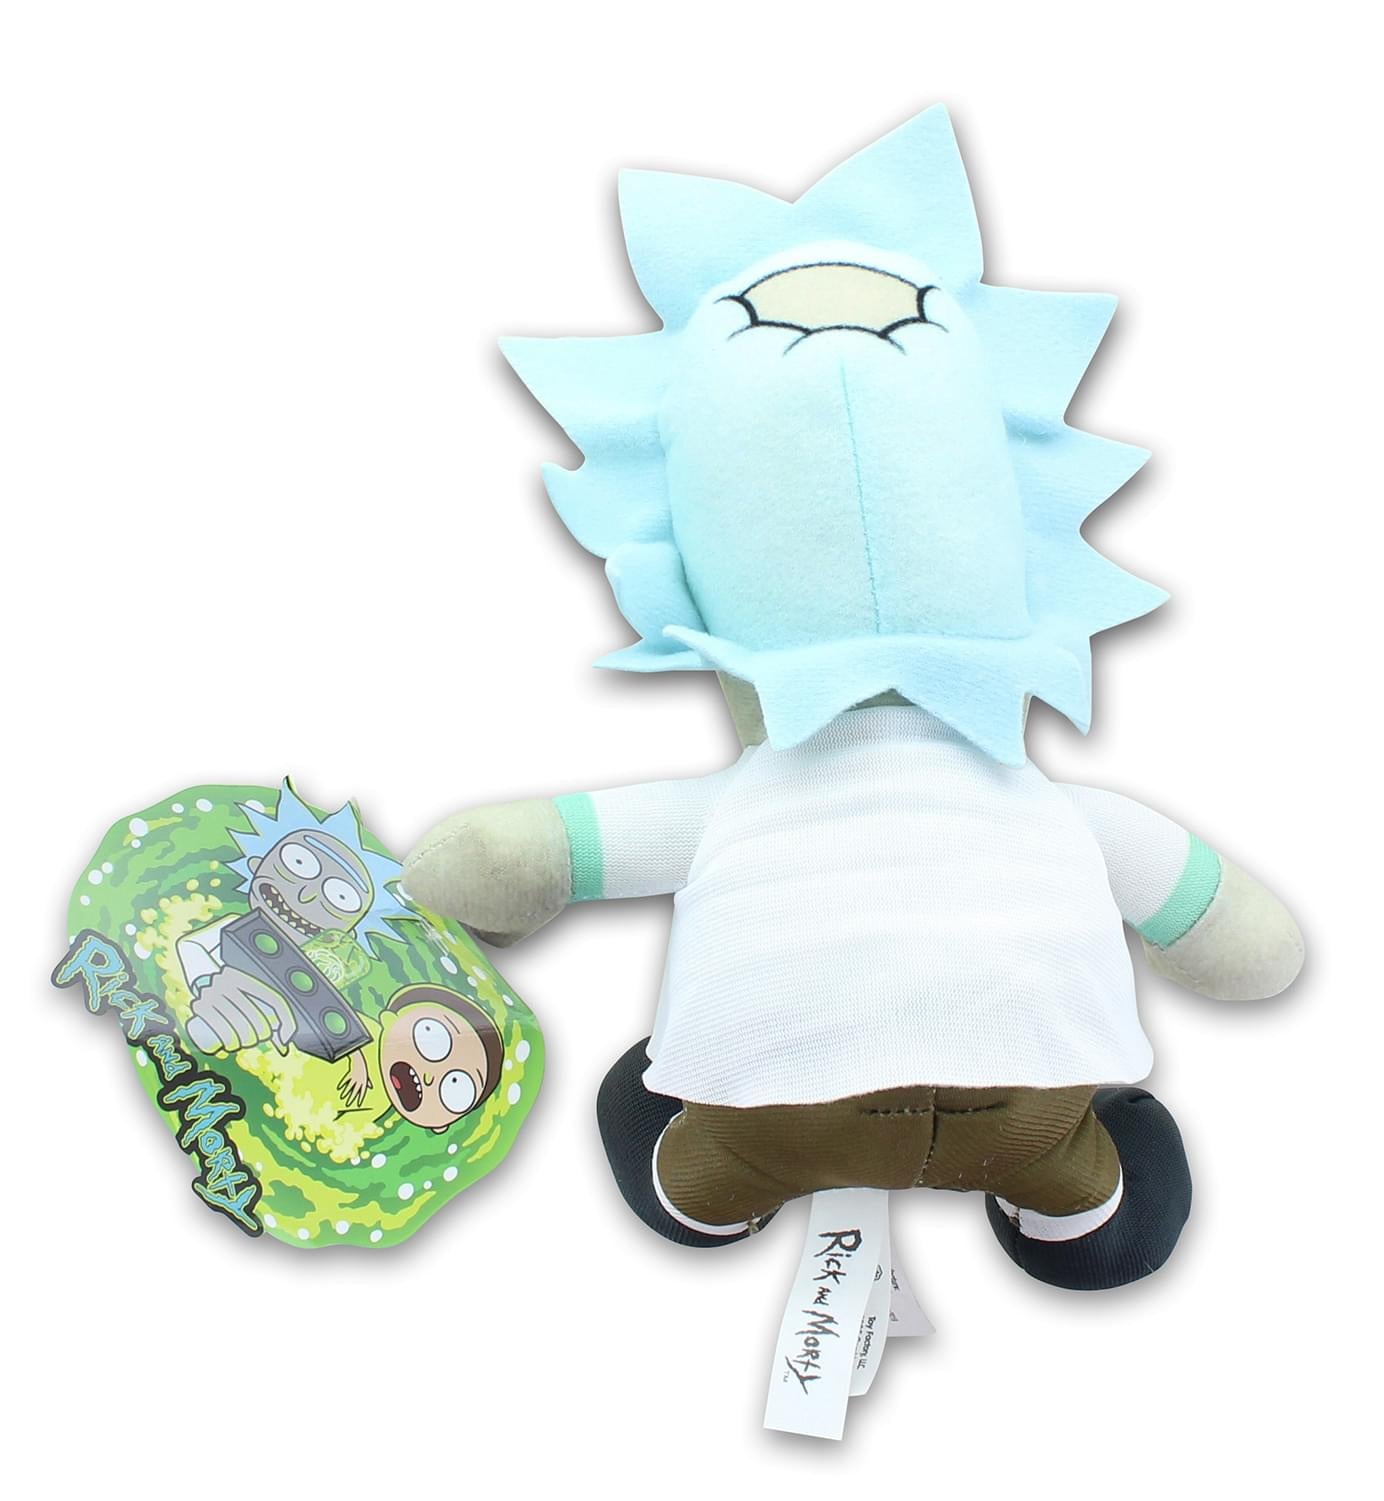 Rick & Morty 8 Inch Stuffed Character Plush | Rick